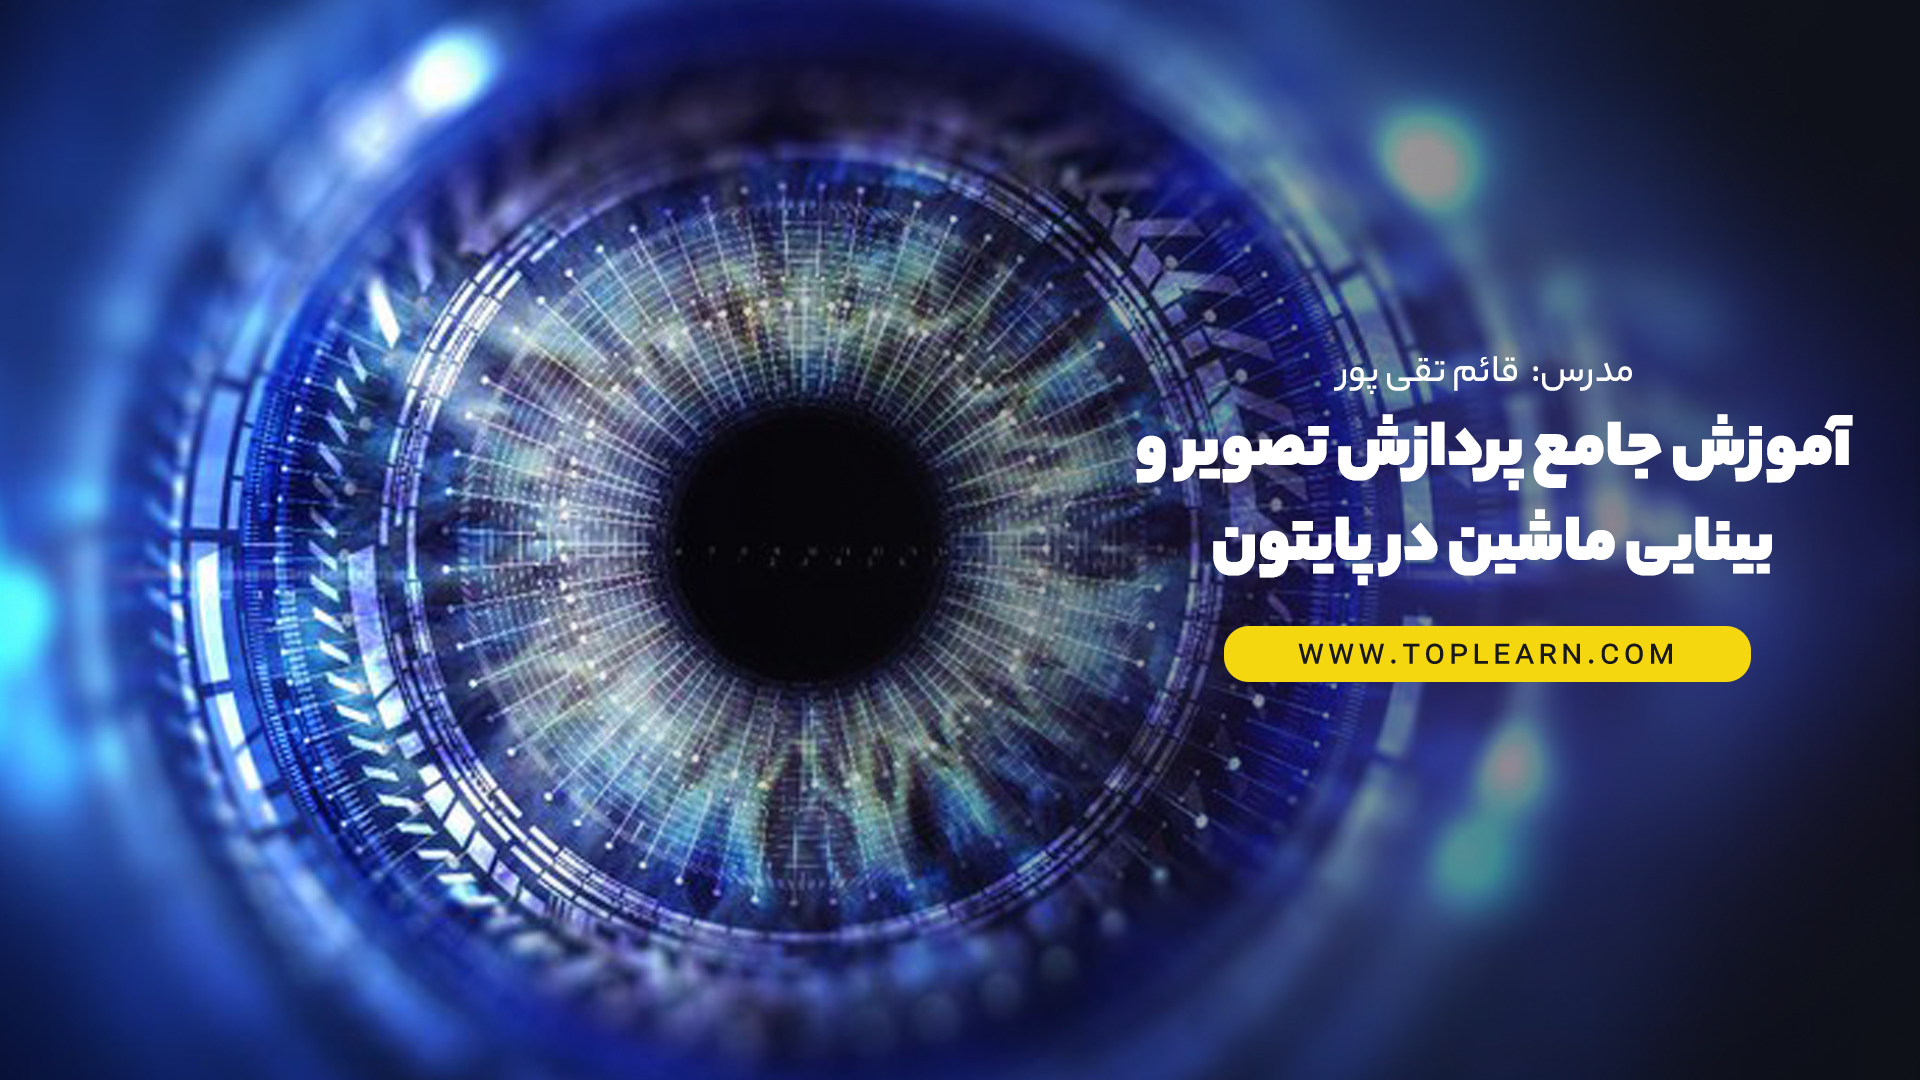 آموزش جامع پردازش تصویر و بینایی ماشین در پایتون